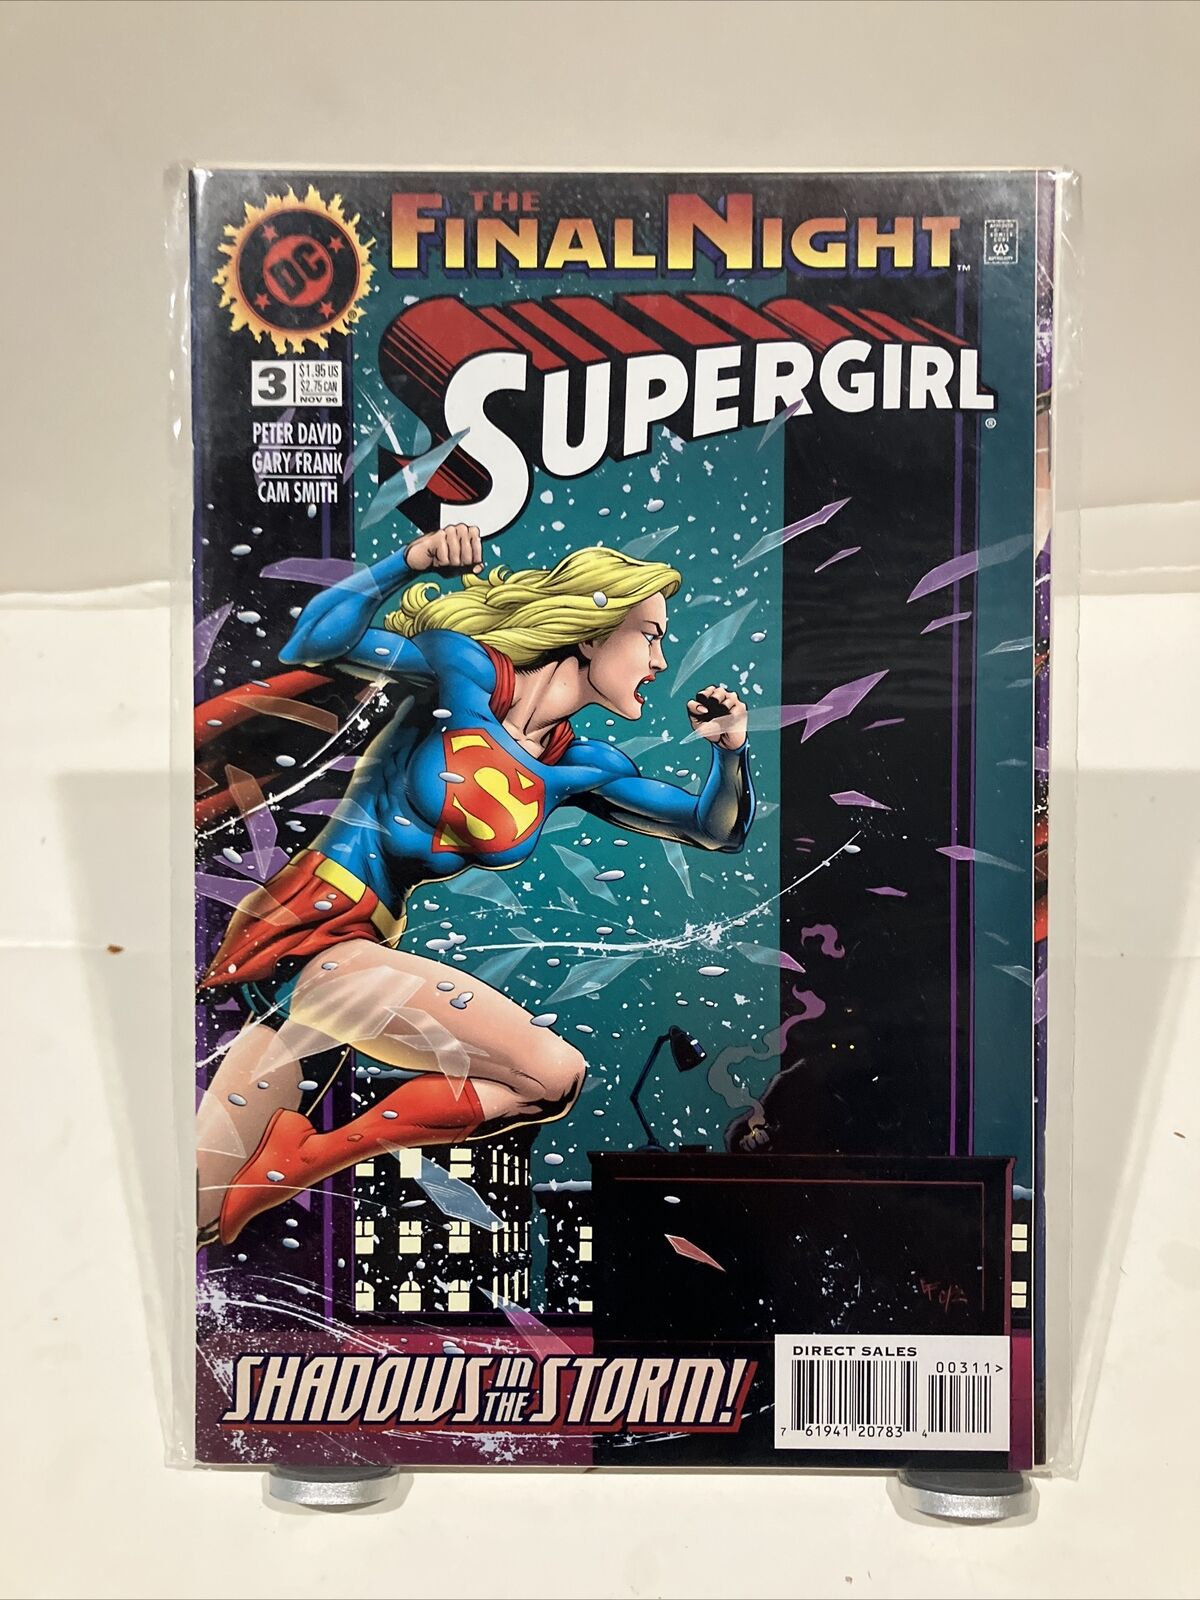 Supergirl #3 DC Comics 1996 Peter David Final Night